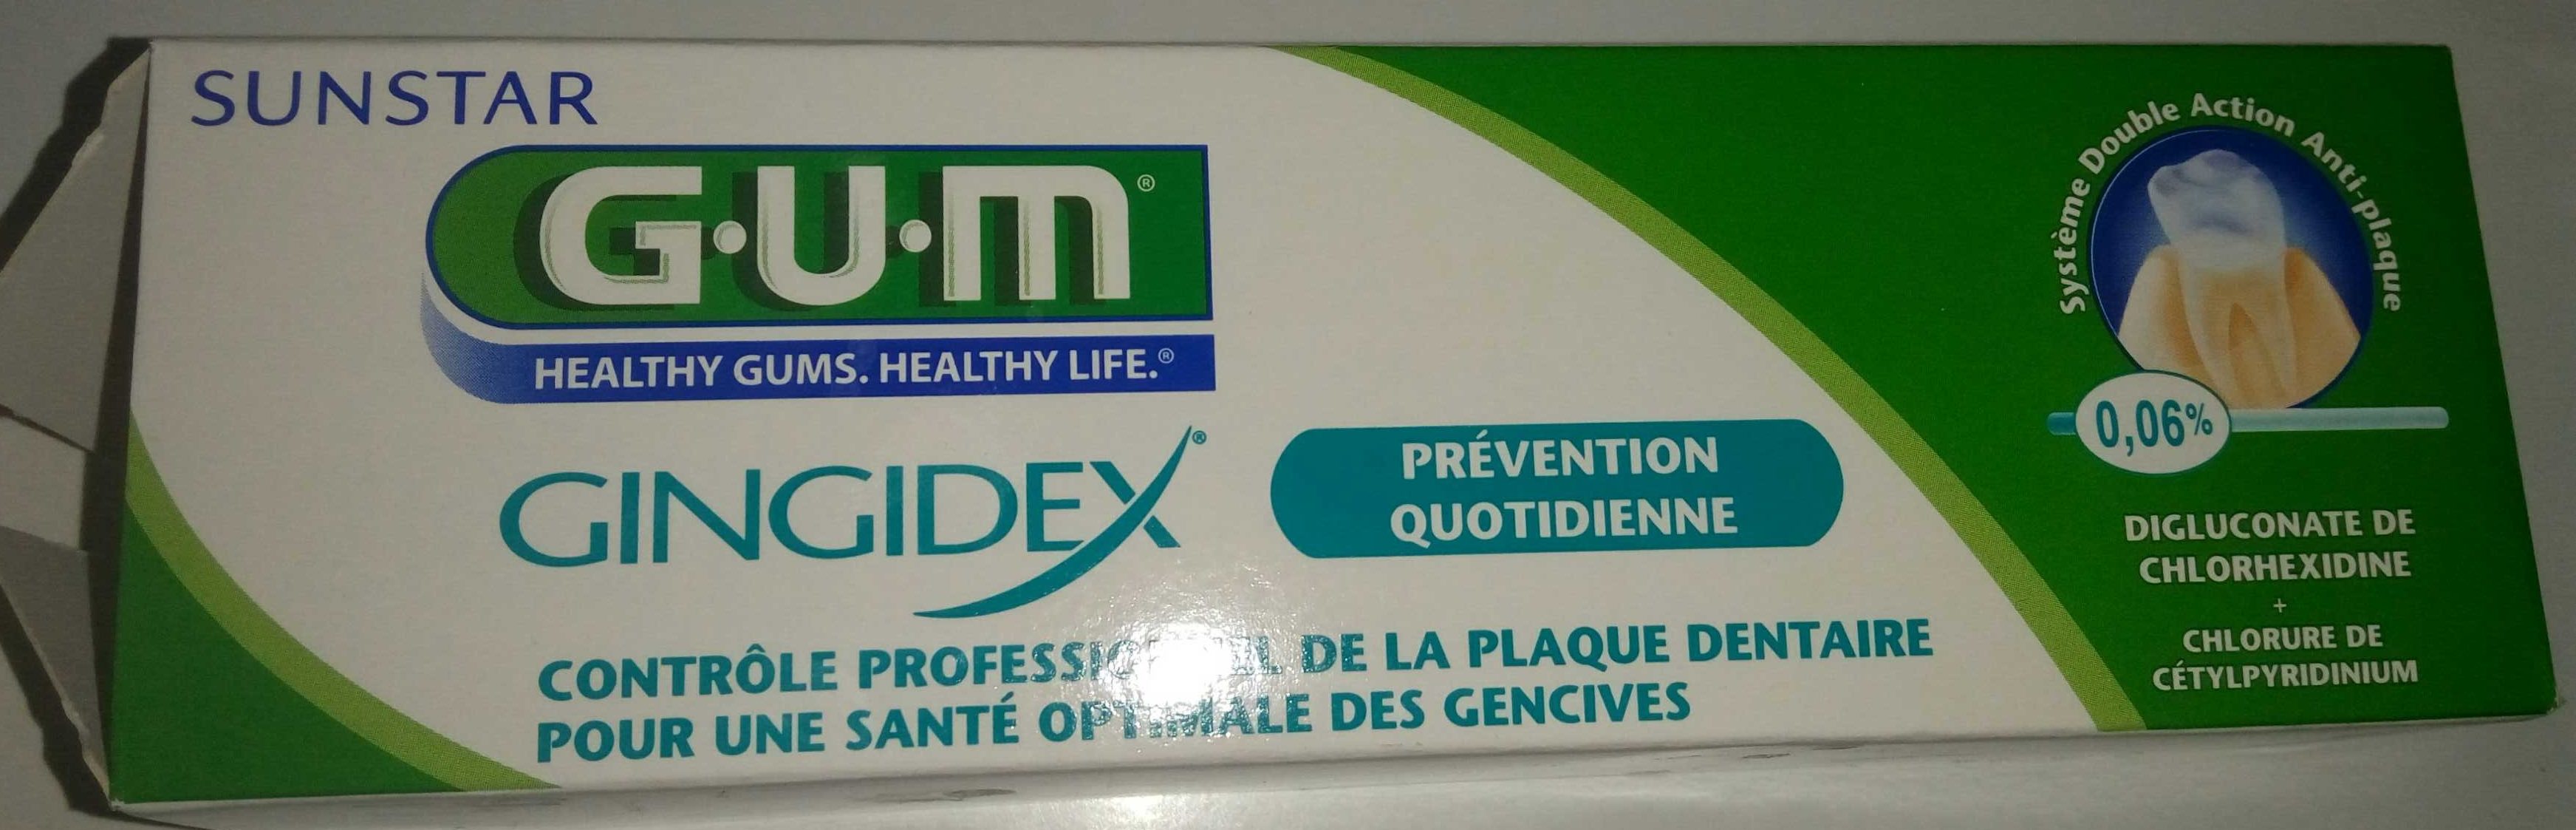 Gum gingidex - Produit - fr